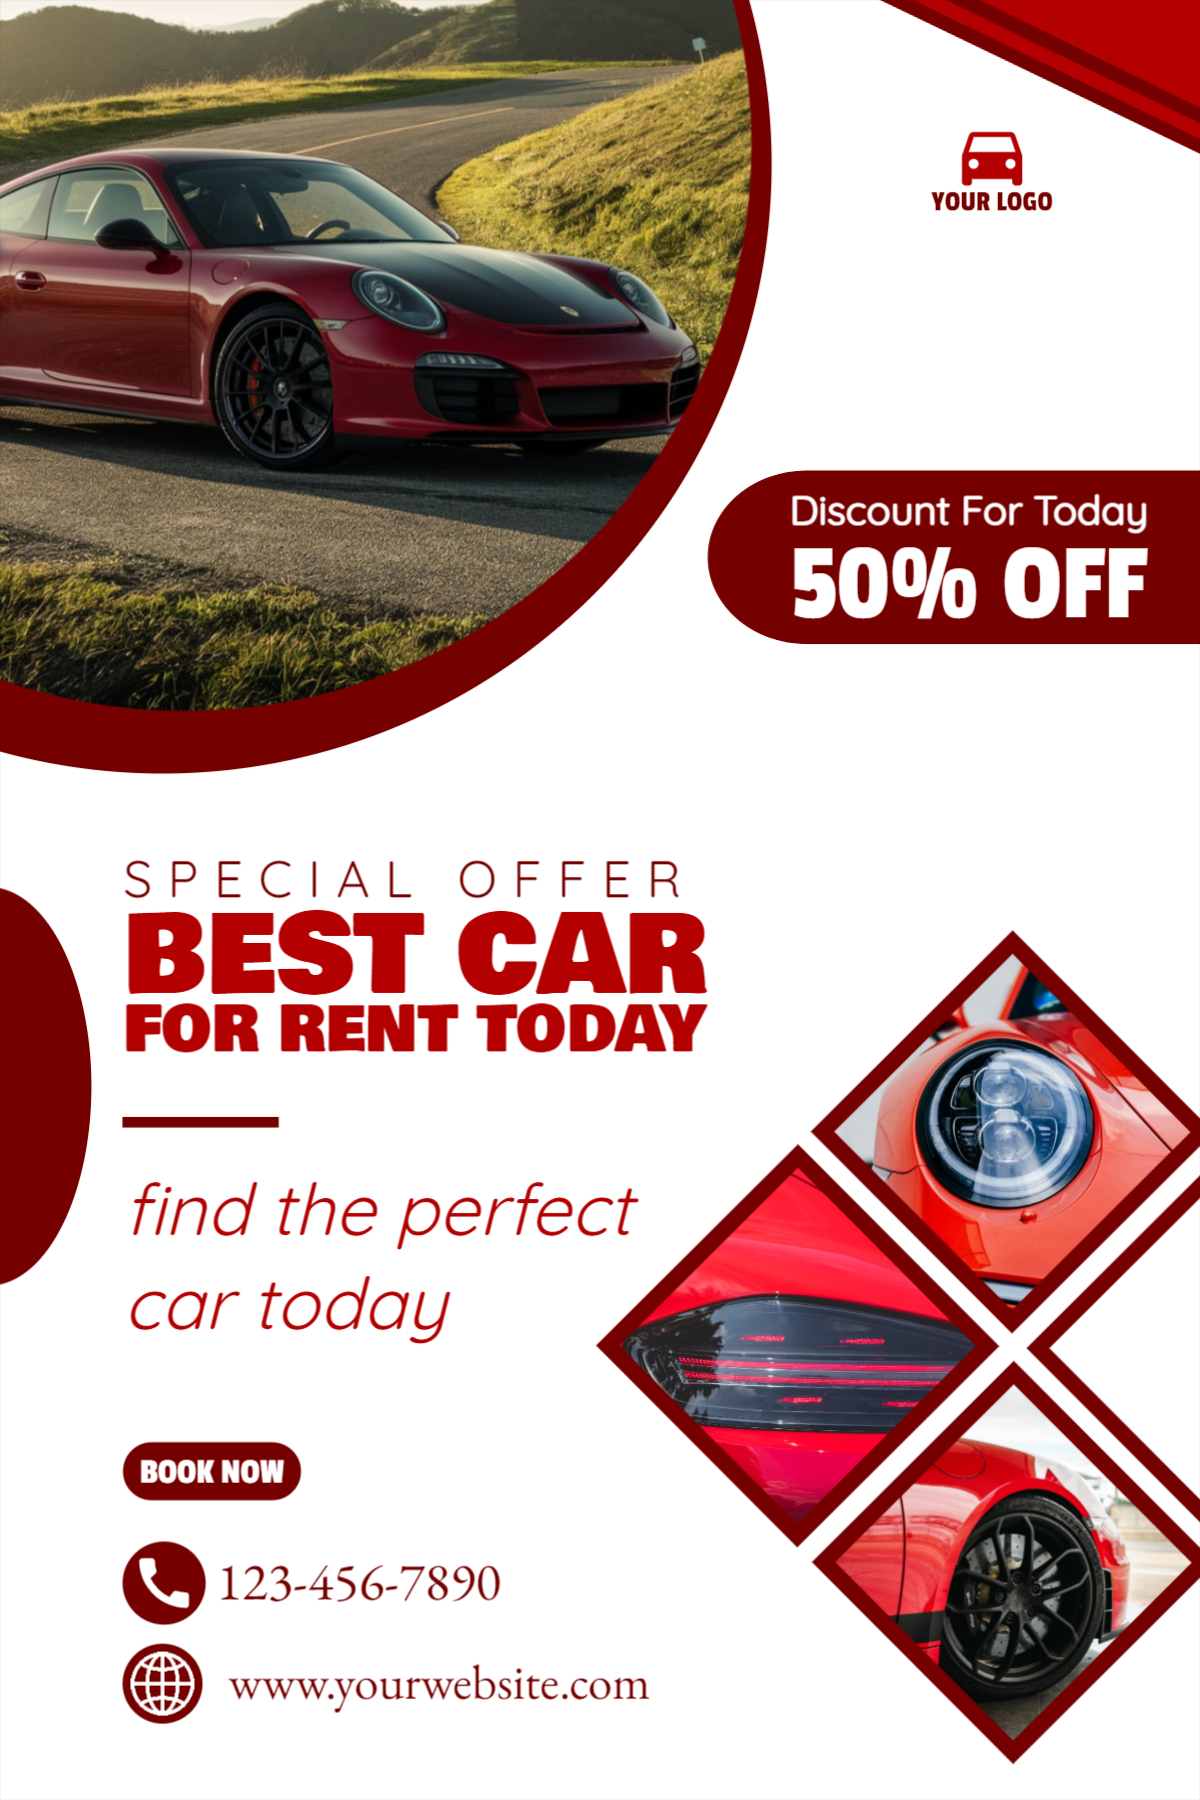 Best Car Sale Car Rental poster design download for free